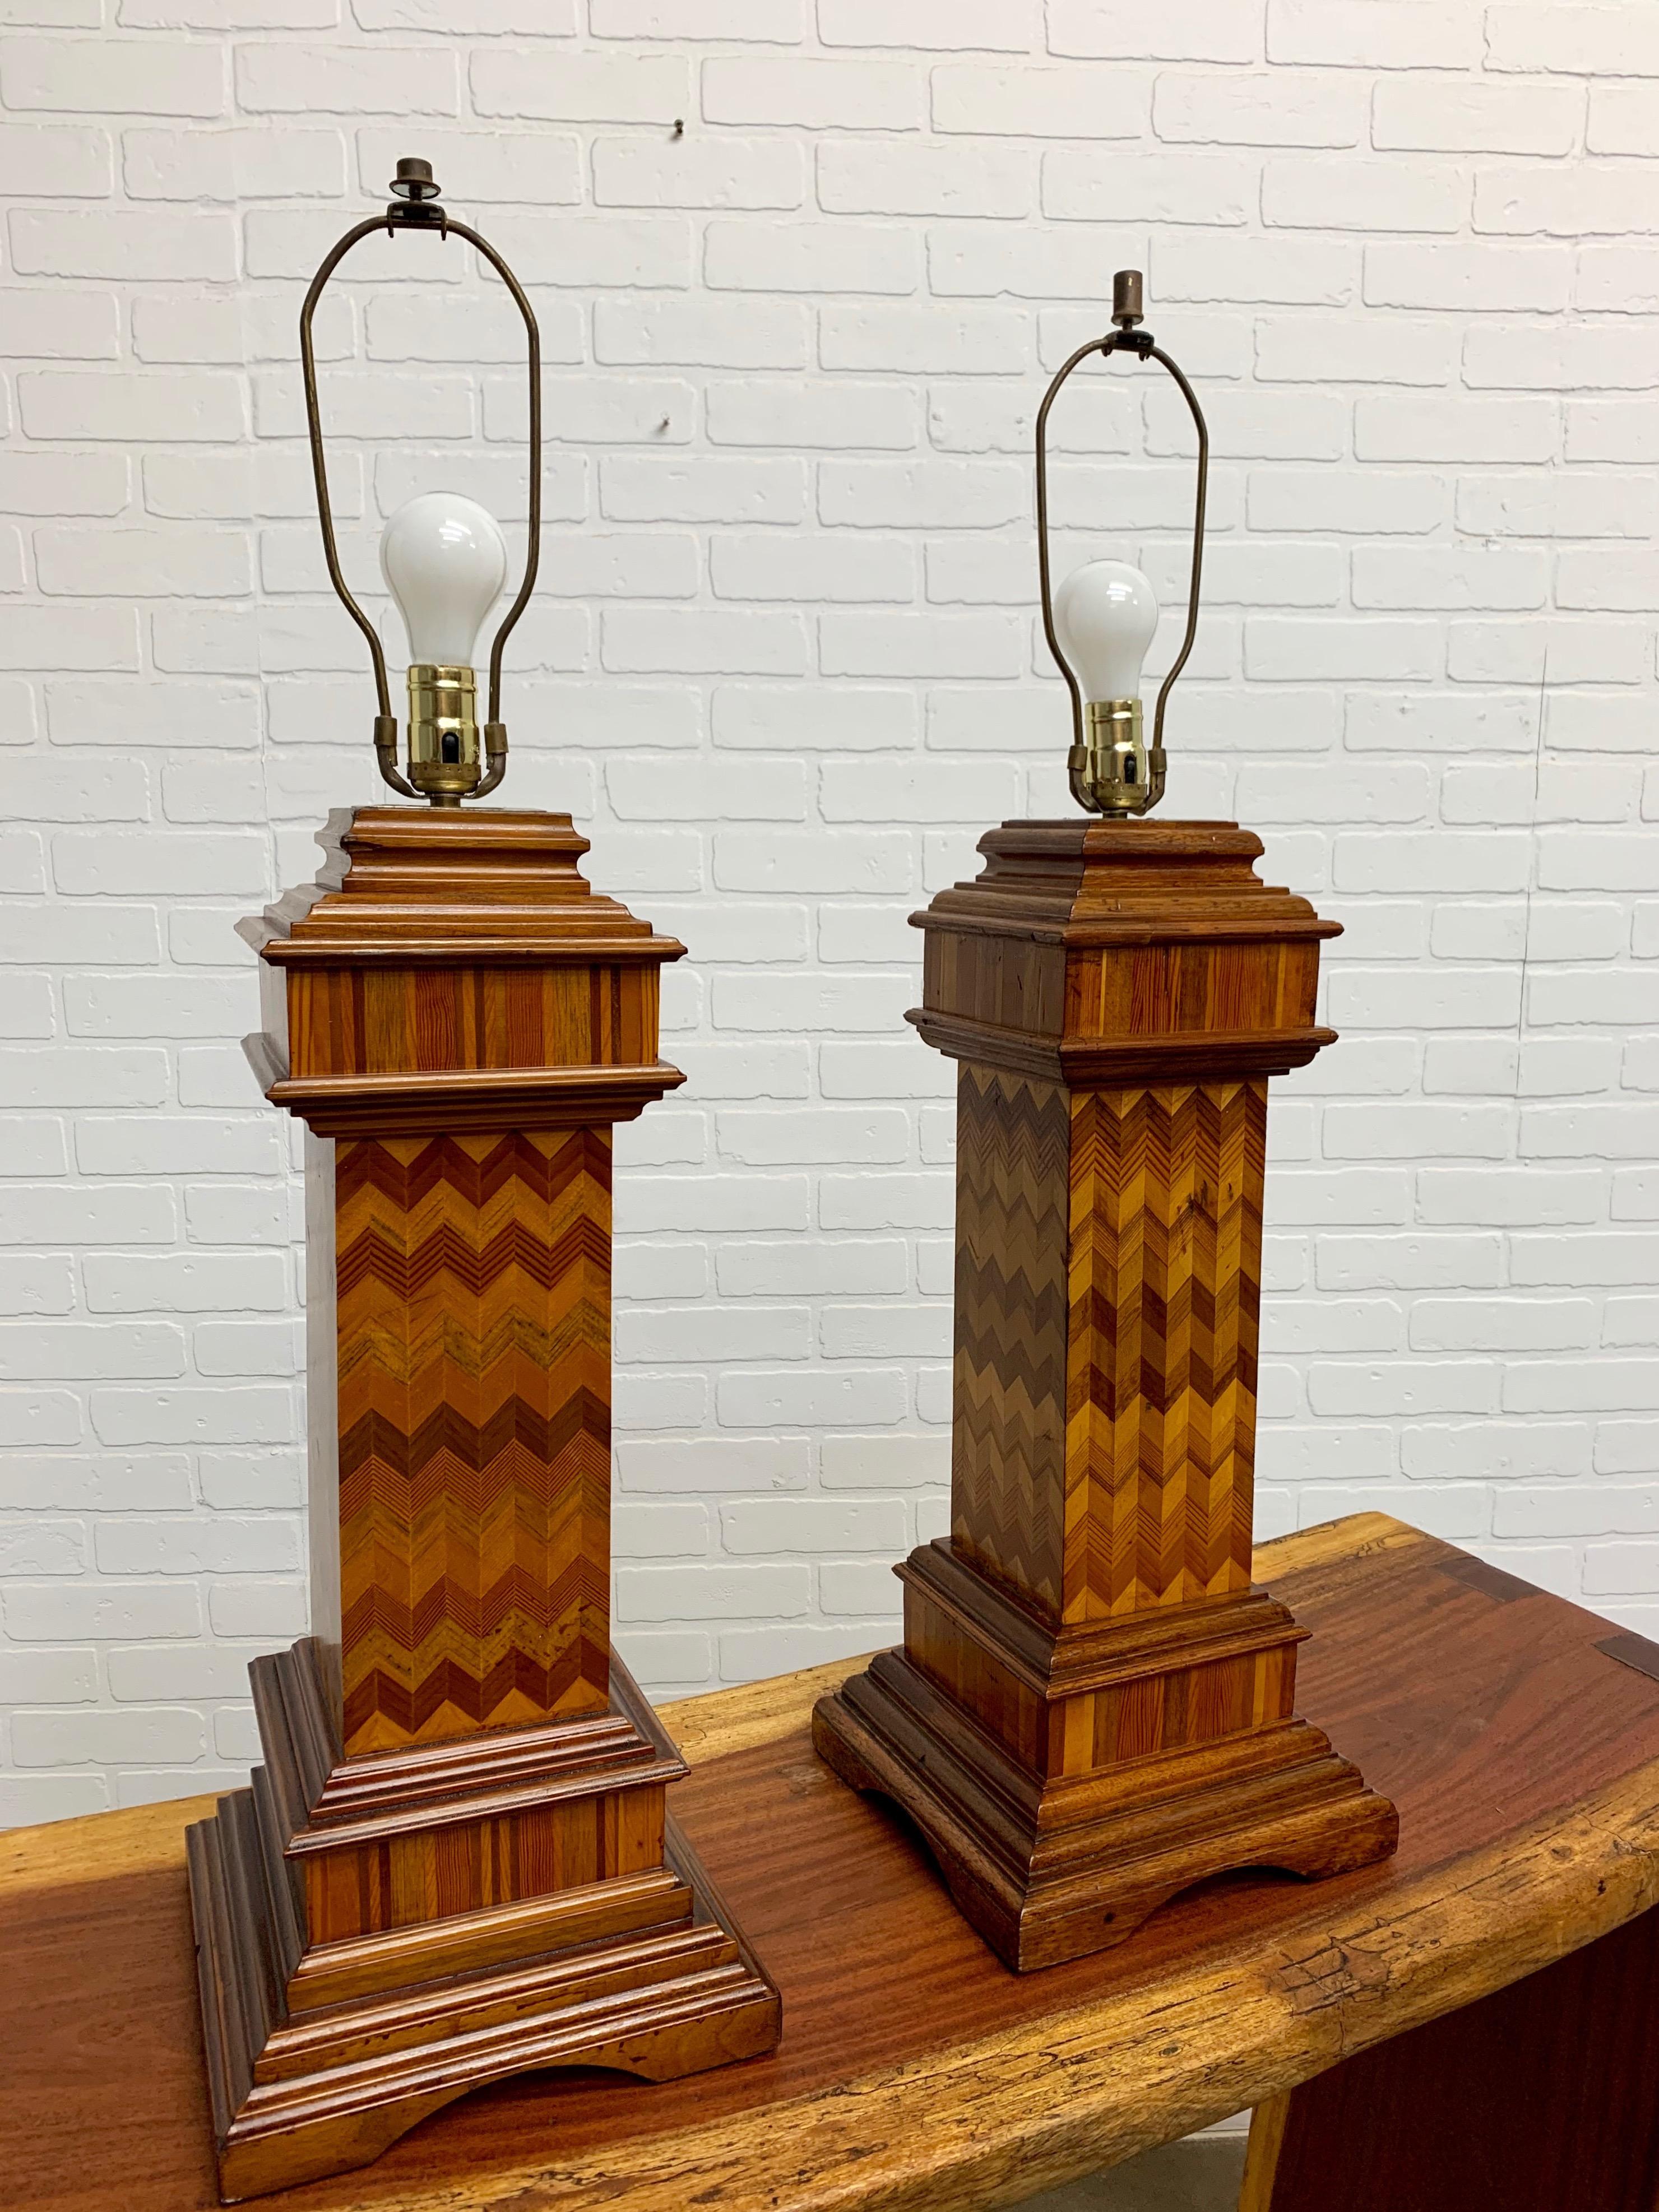 Belle Époque Antique Wood Lamps Made of Architectural Elements